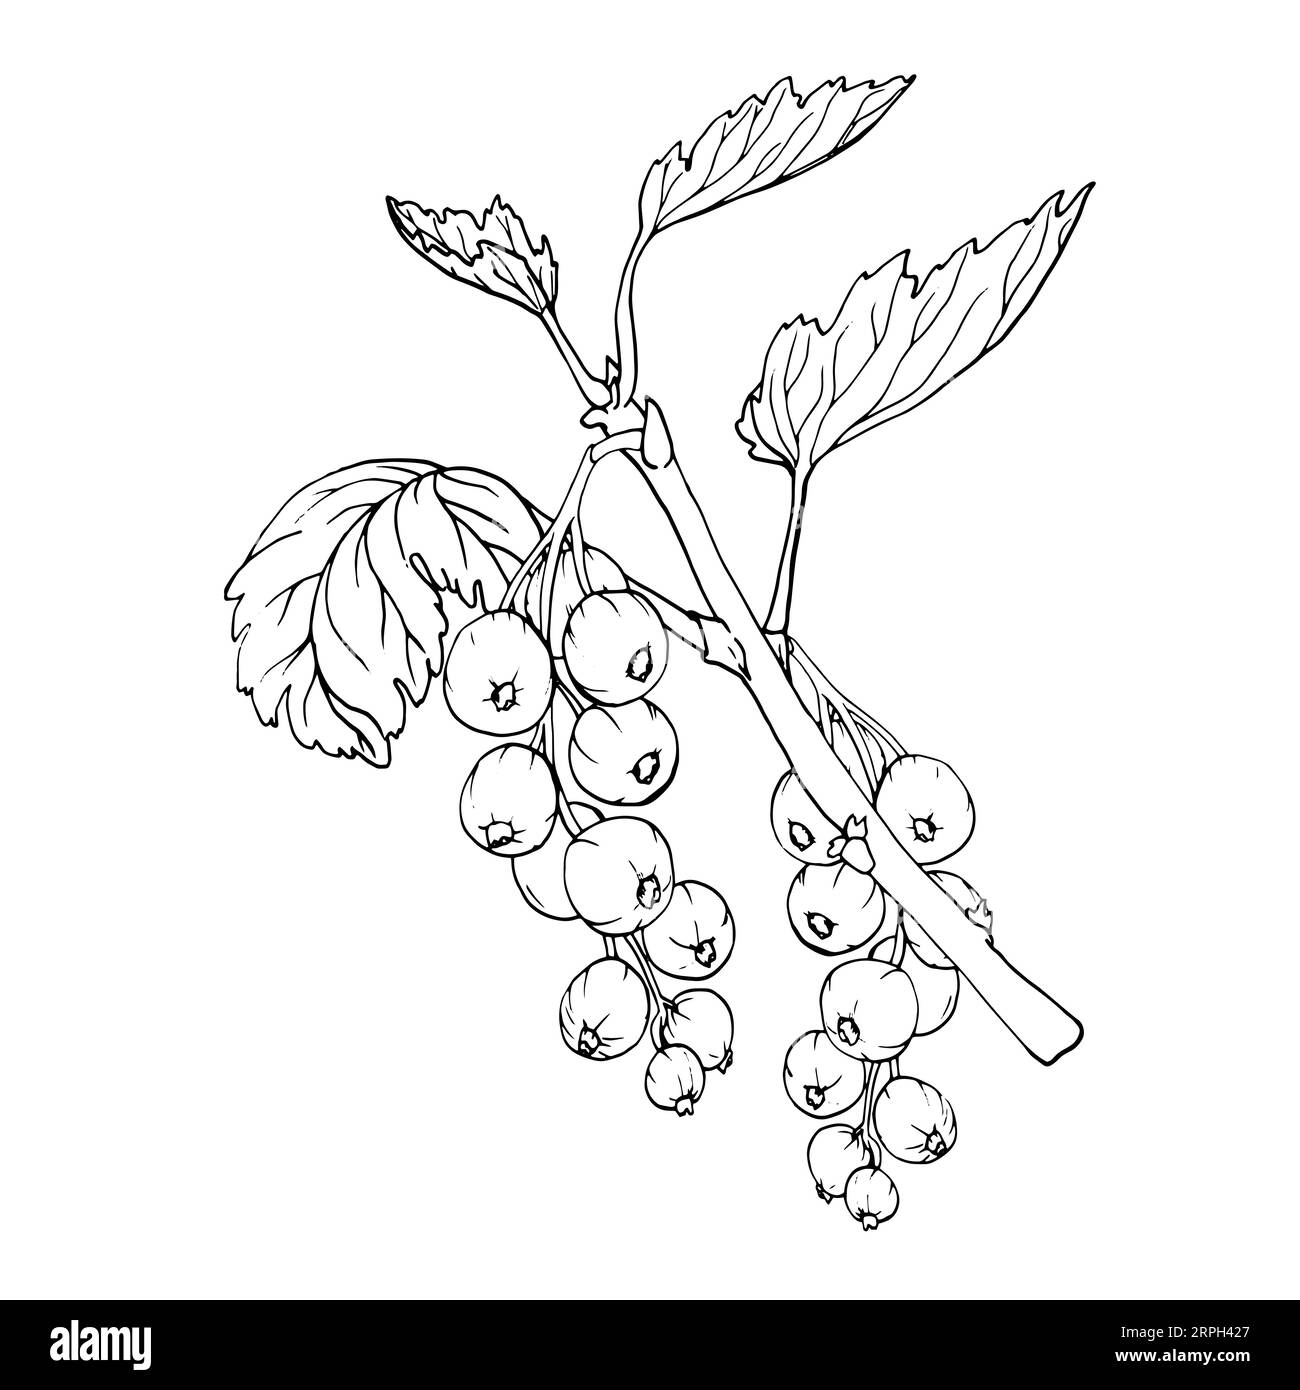 Baies de groseilles rouges isolées sur fond blanc. Illustration botanique vectorielle dessinée à la main. Clip art croquis de branches de baies. Fruit d'été gravé styl Illustration de Vecteur